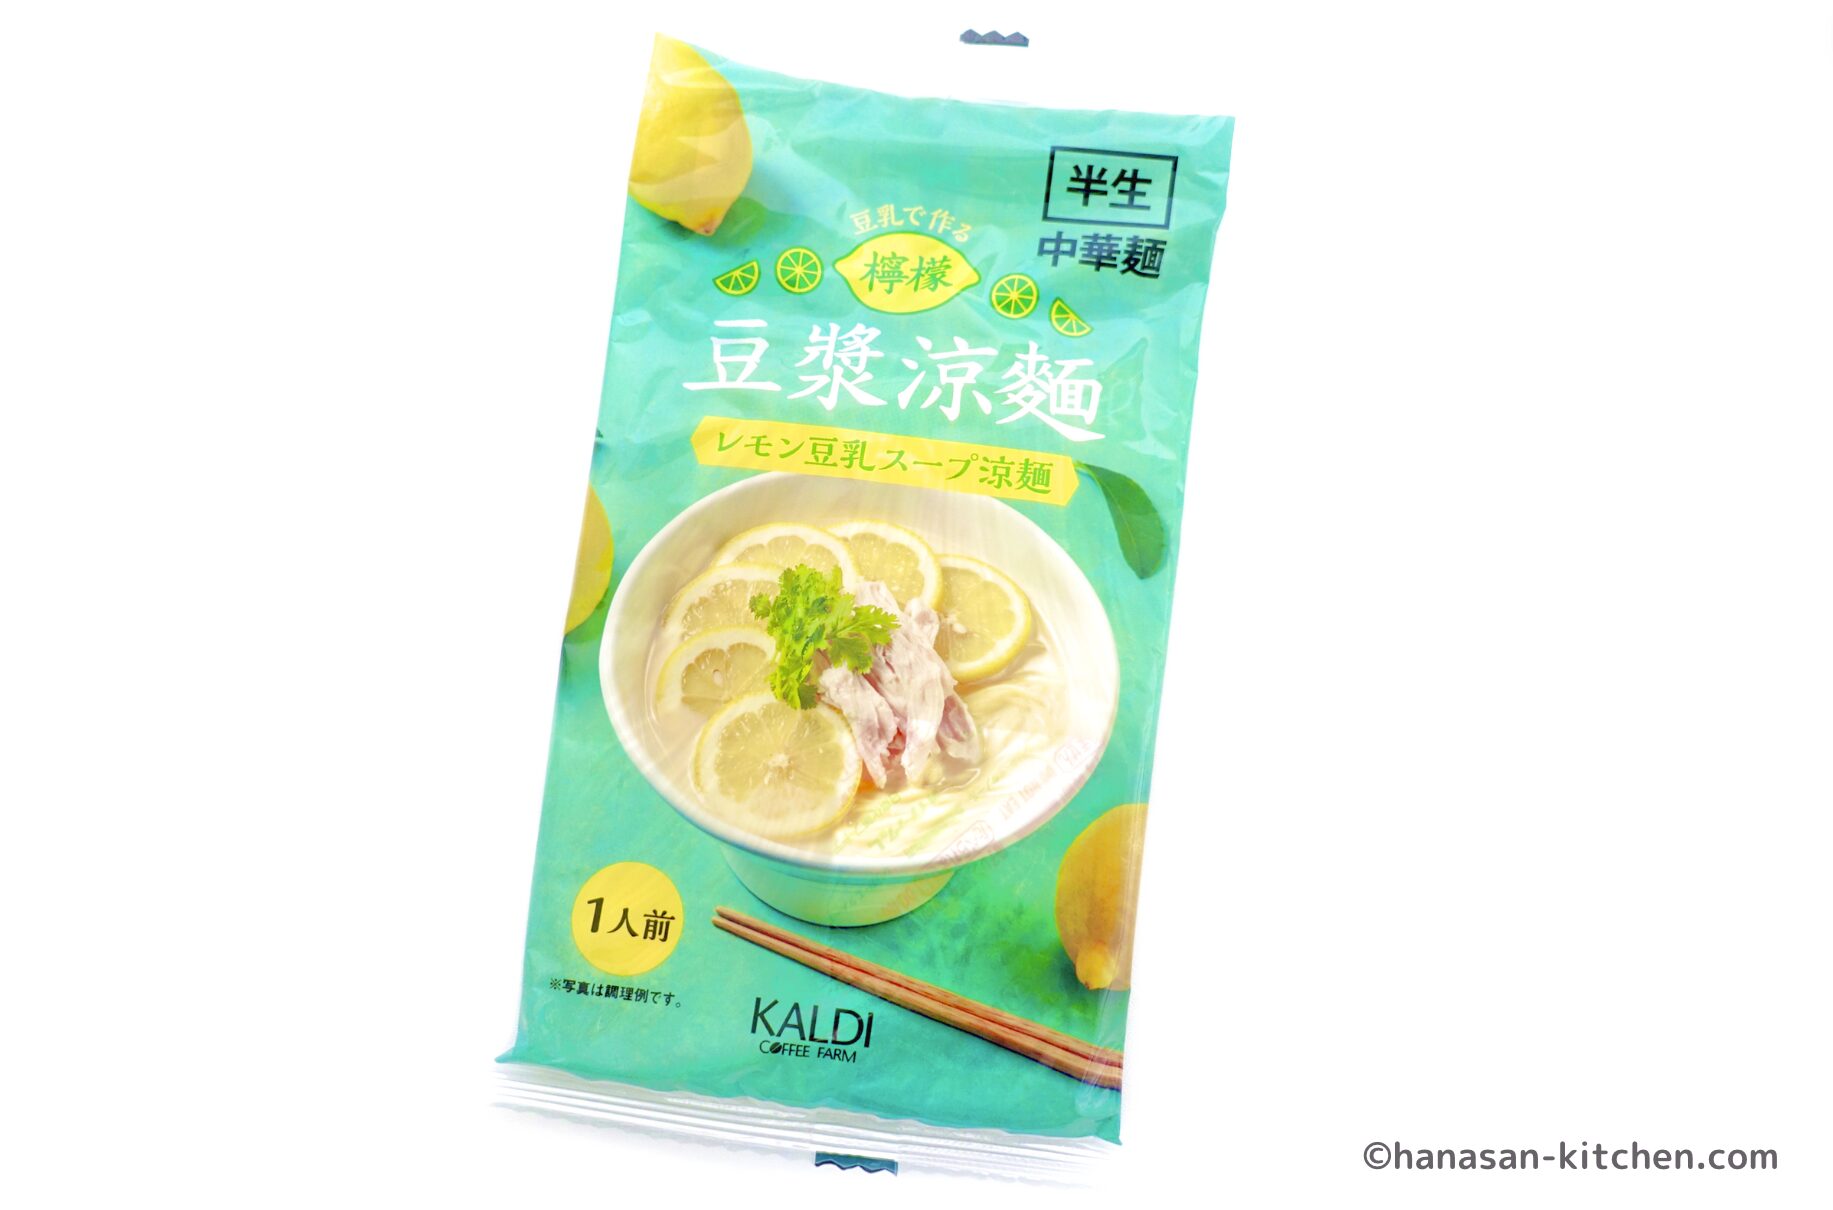 レモン豆乳スープ涼麺のパッケージ